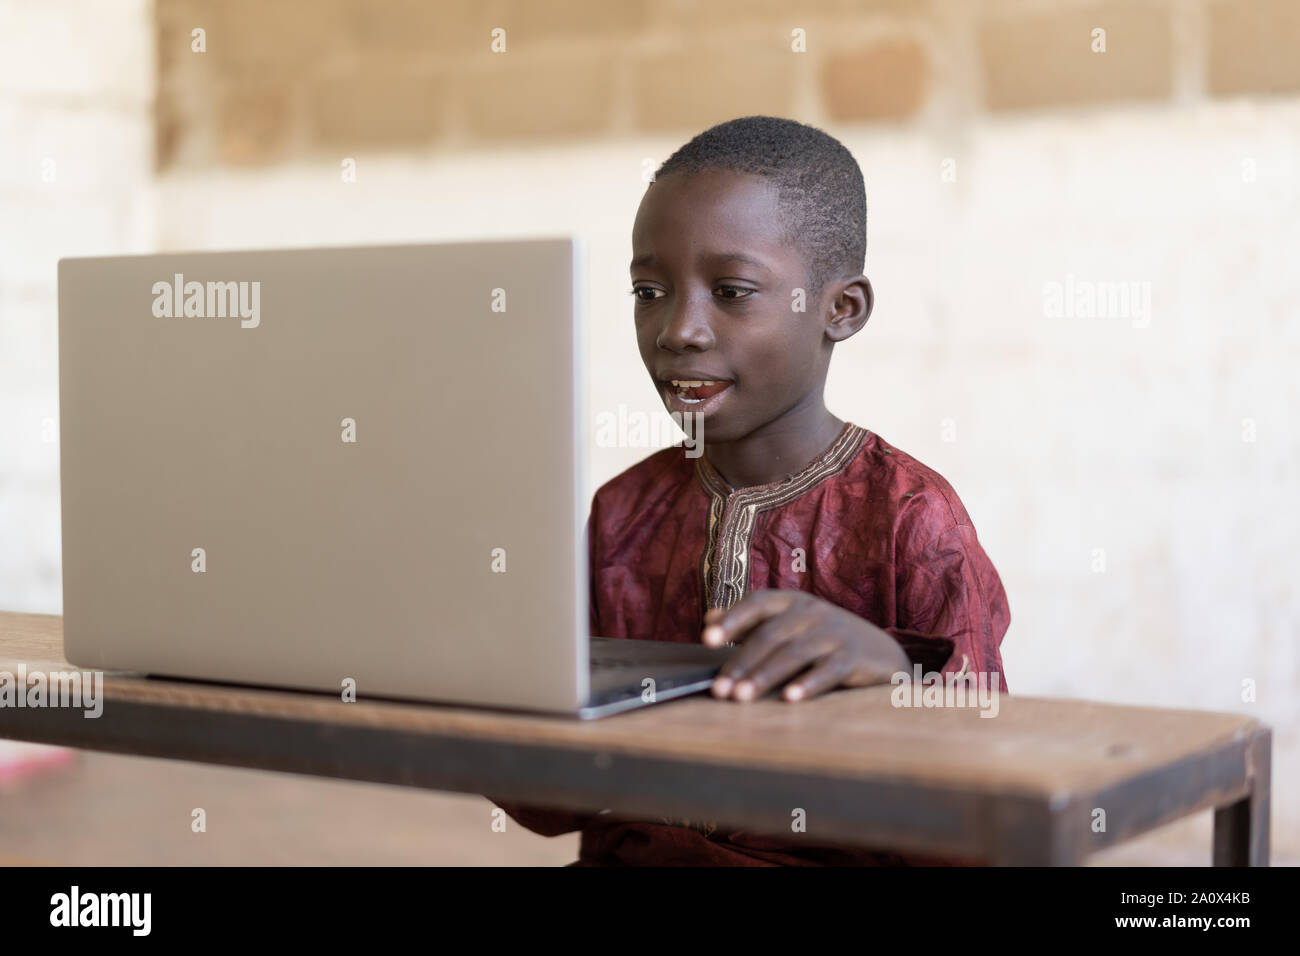 Connexion Internet moderne de l'Afrique noire africaine Boy Studying Learning Banque D'Images